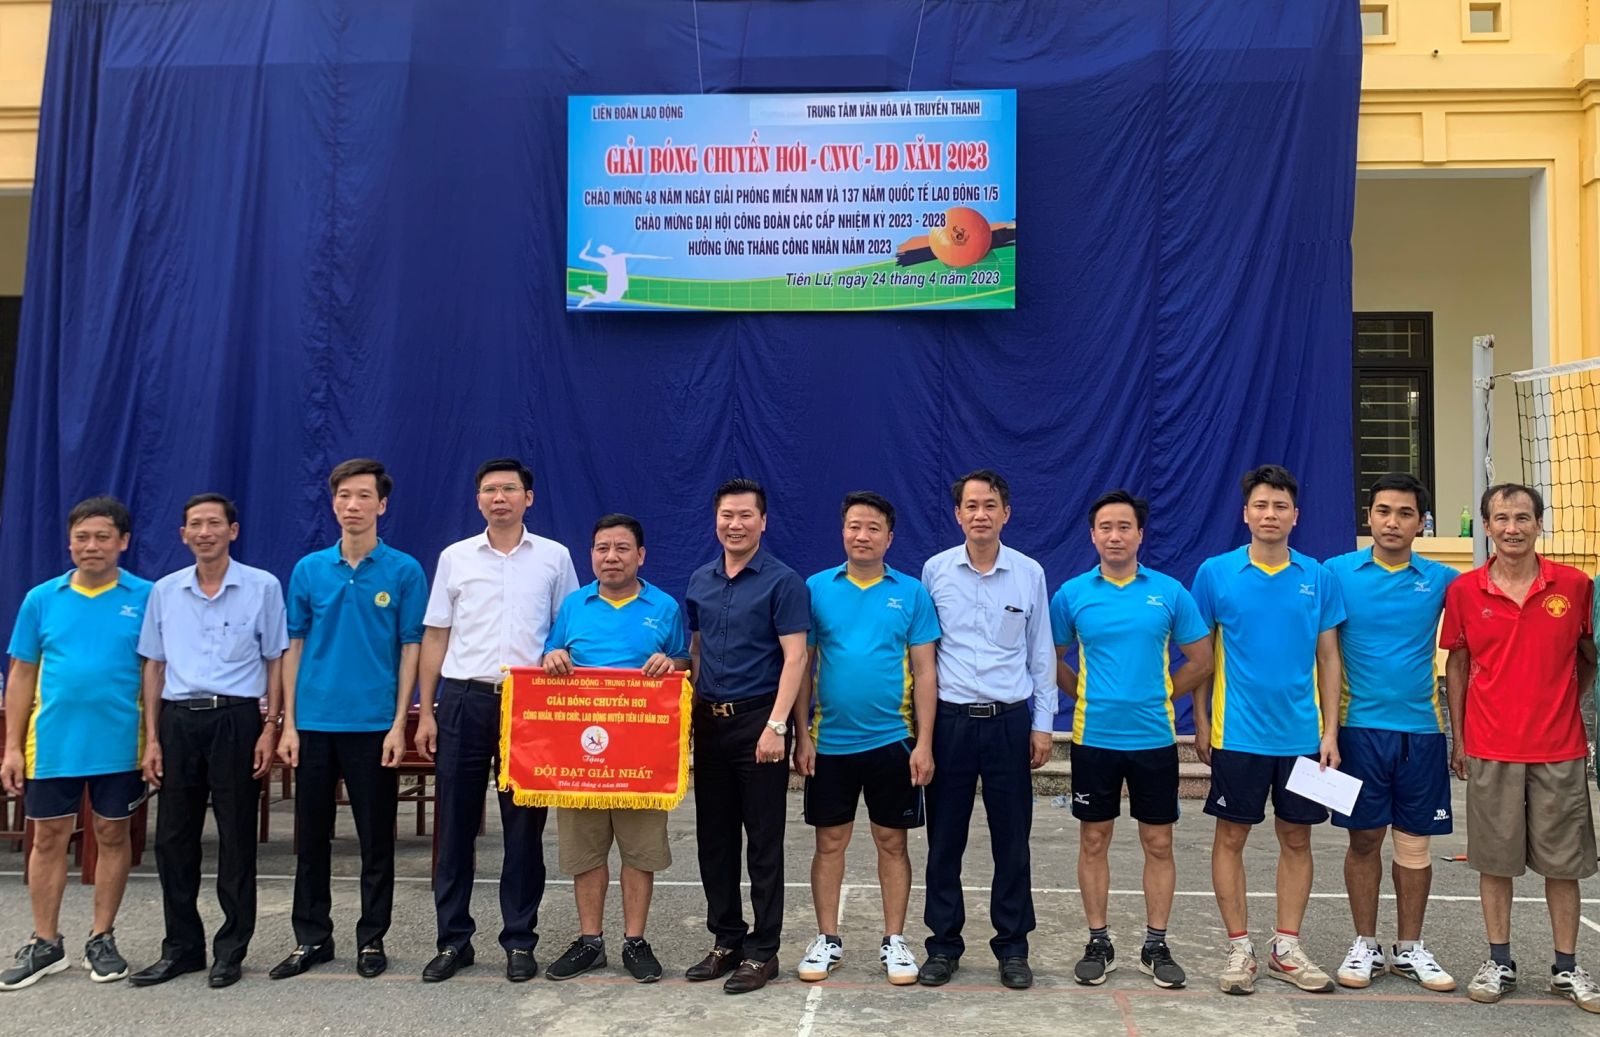 LĐLĐ huyện Tiên Lữ tổ chức giải bóng chuyền hơi CNVCLĐ năm 2023